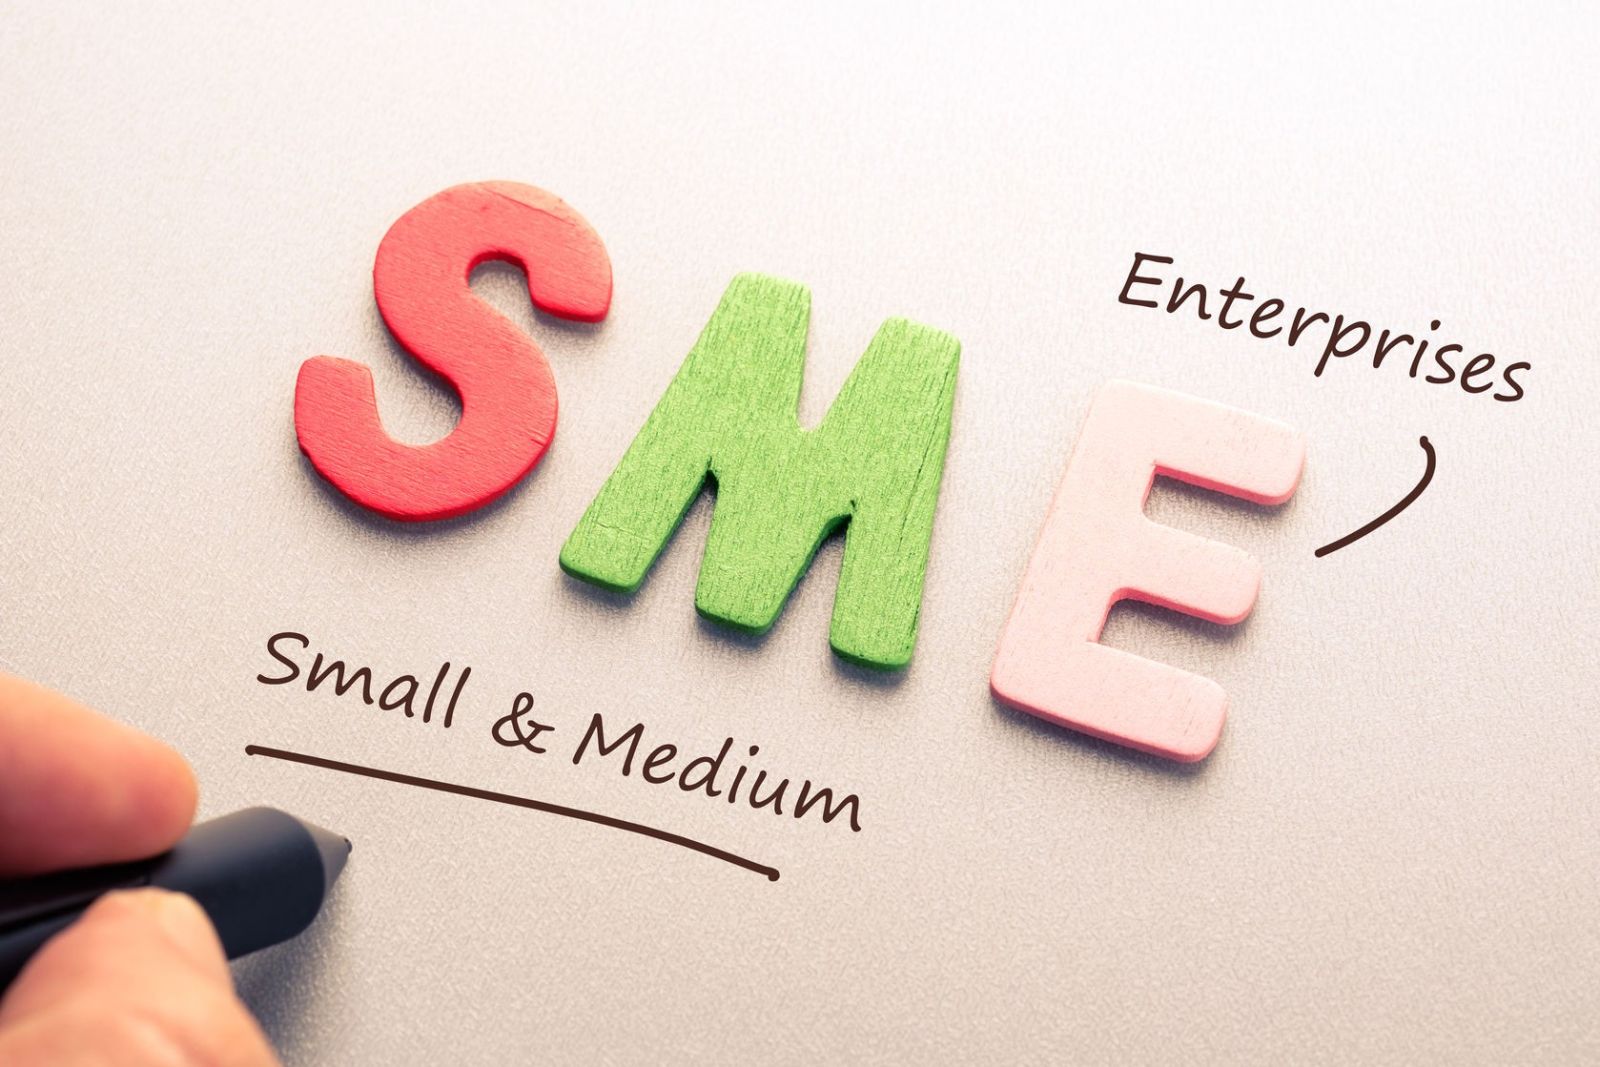 Doanh nghiệp SME chiếm tới 95% tổng số các doanh nghiệp trên toàn cầu và tạo nên 50% công việc cho người lao động.